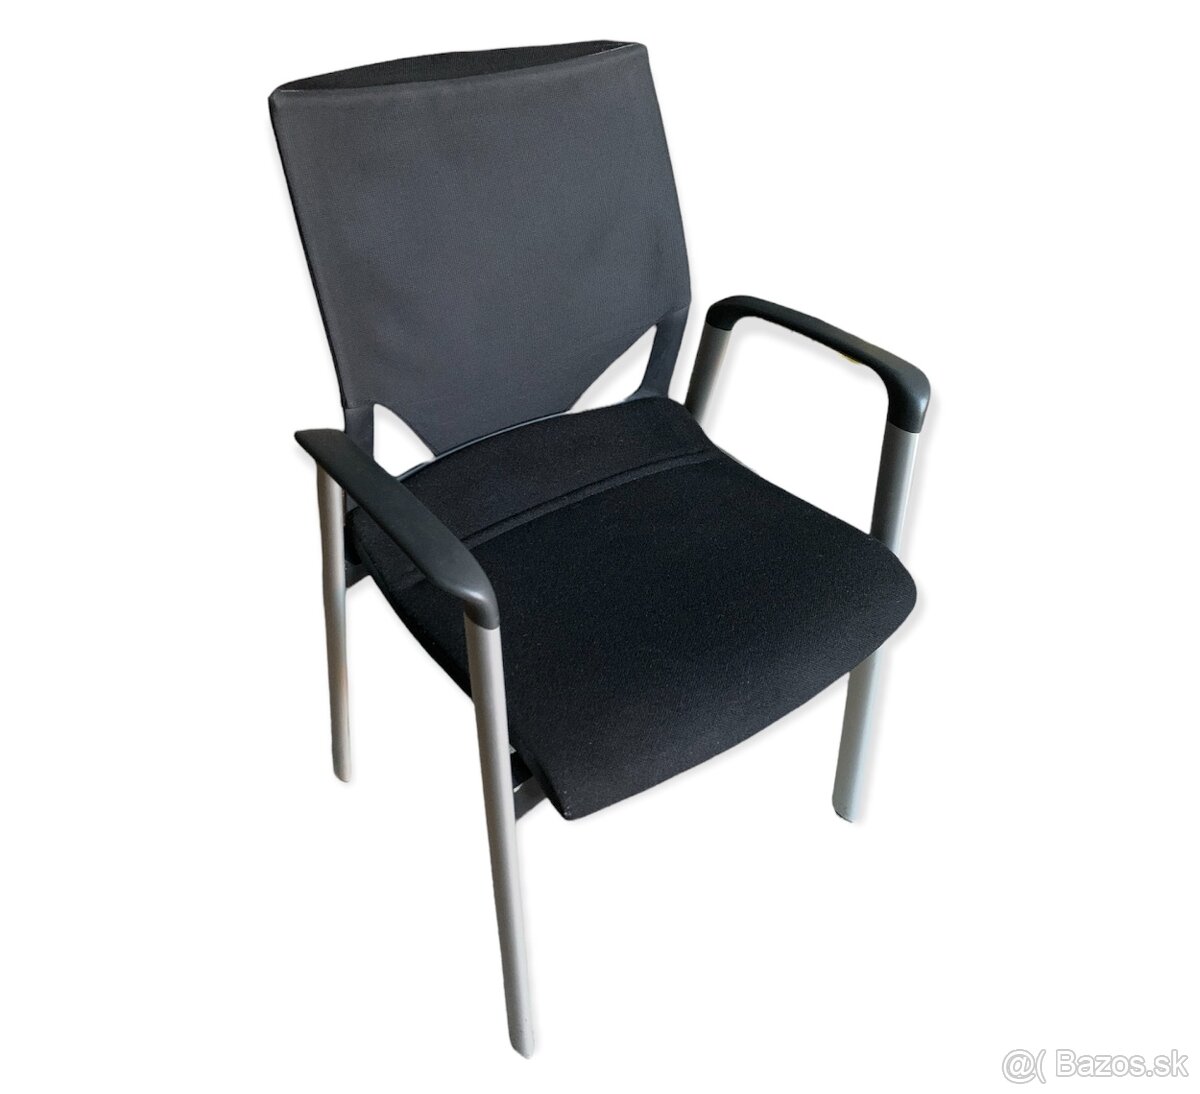 WILKHAHN - designová kancelářská židle, PC 20 tis. Kč